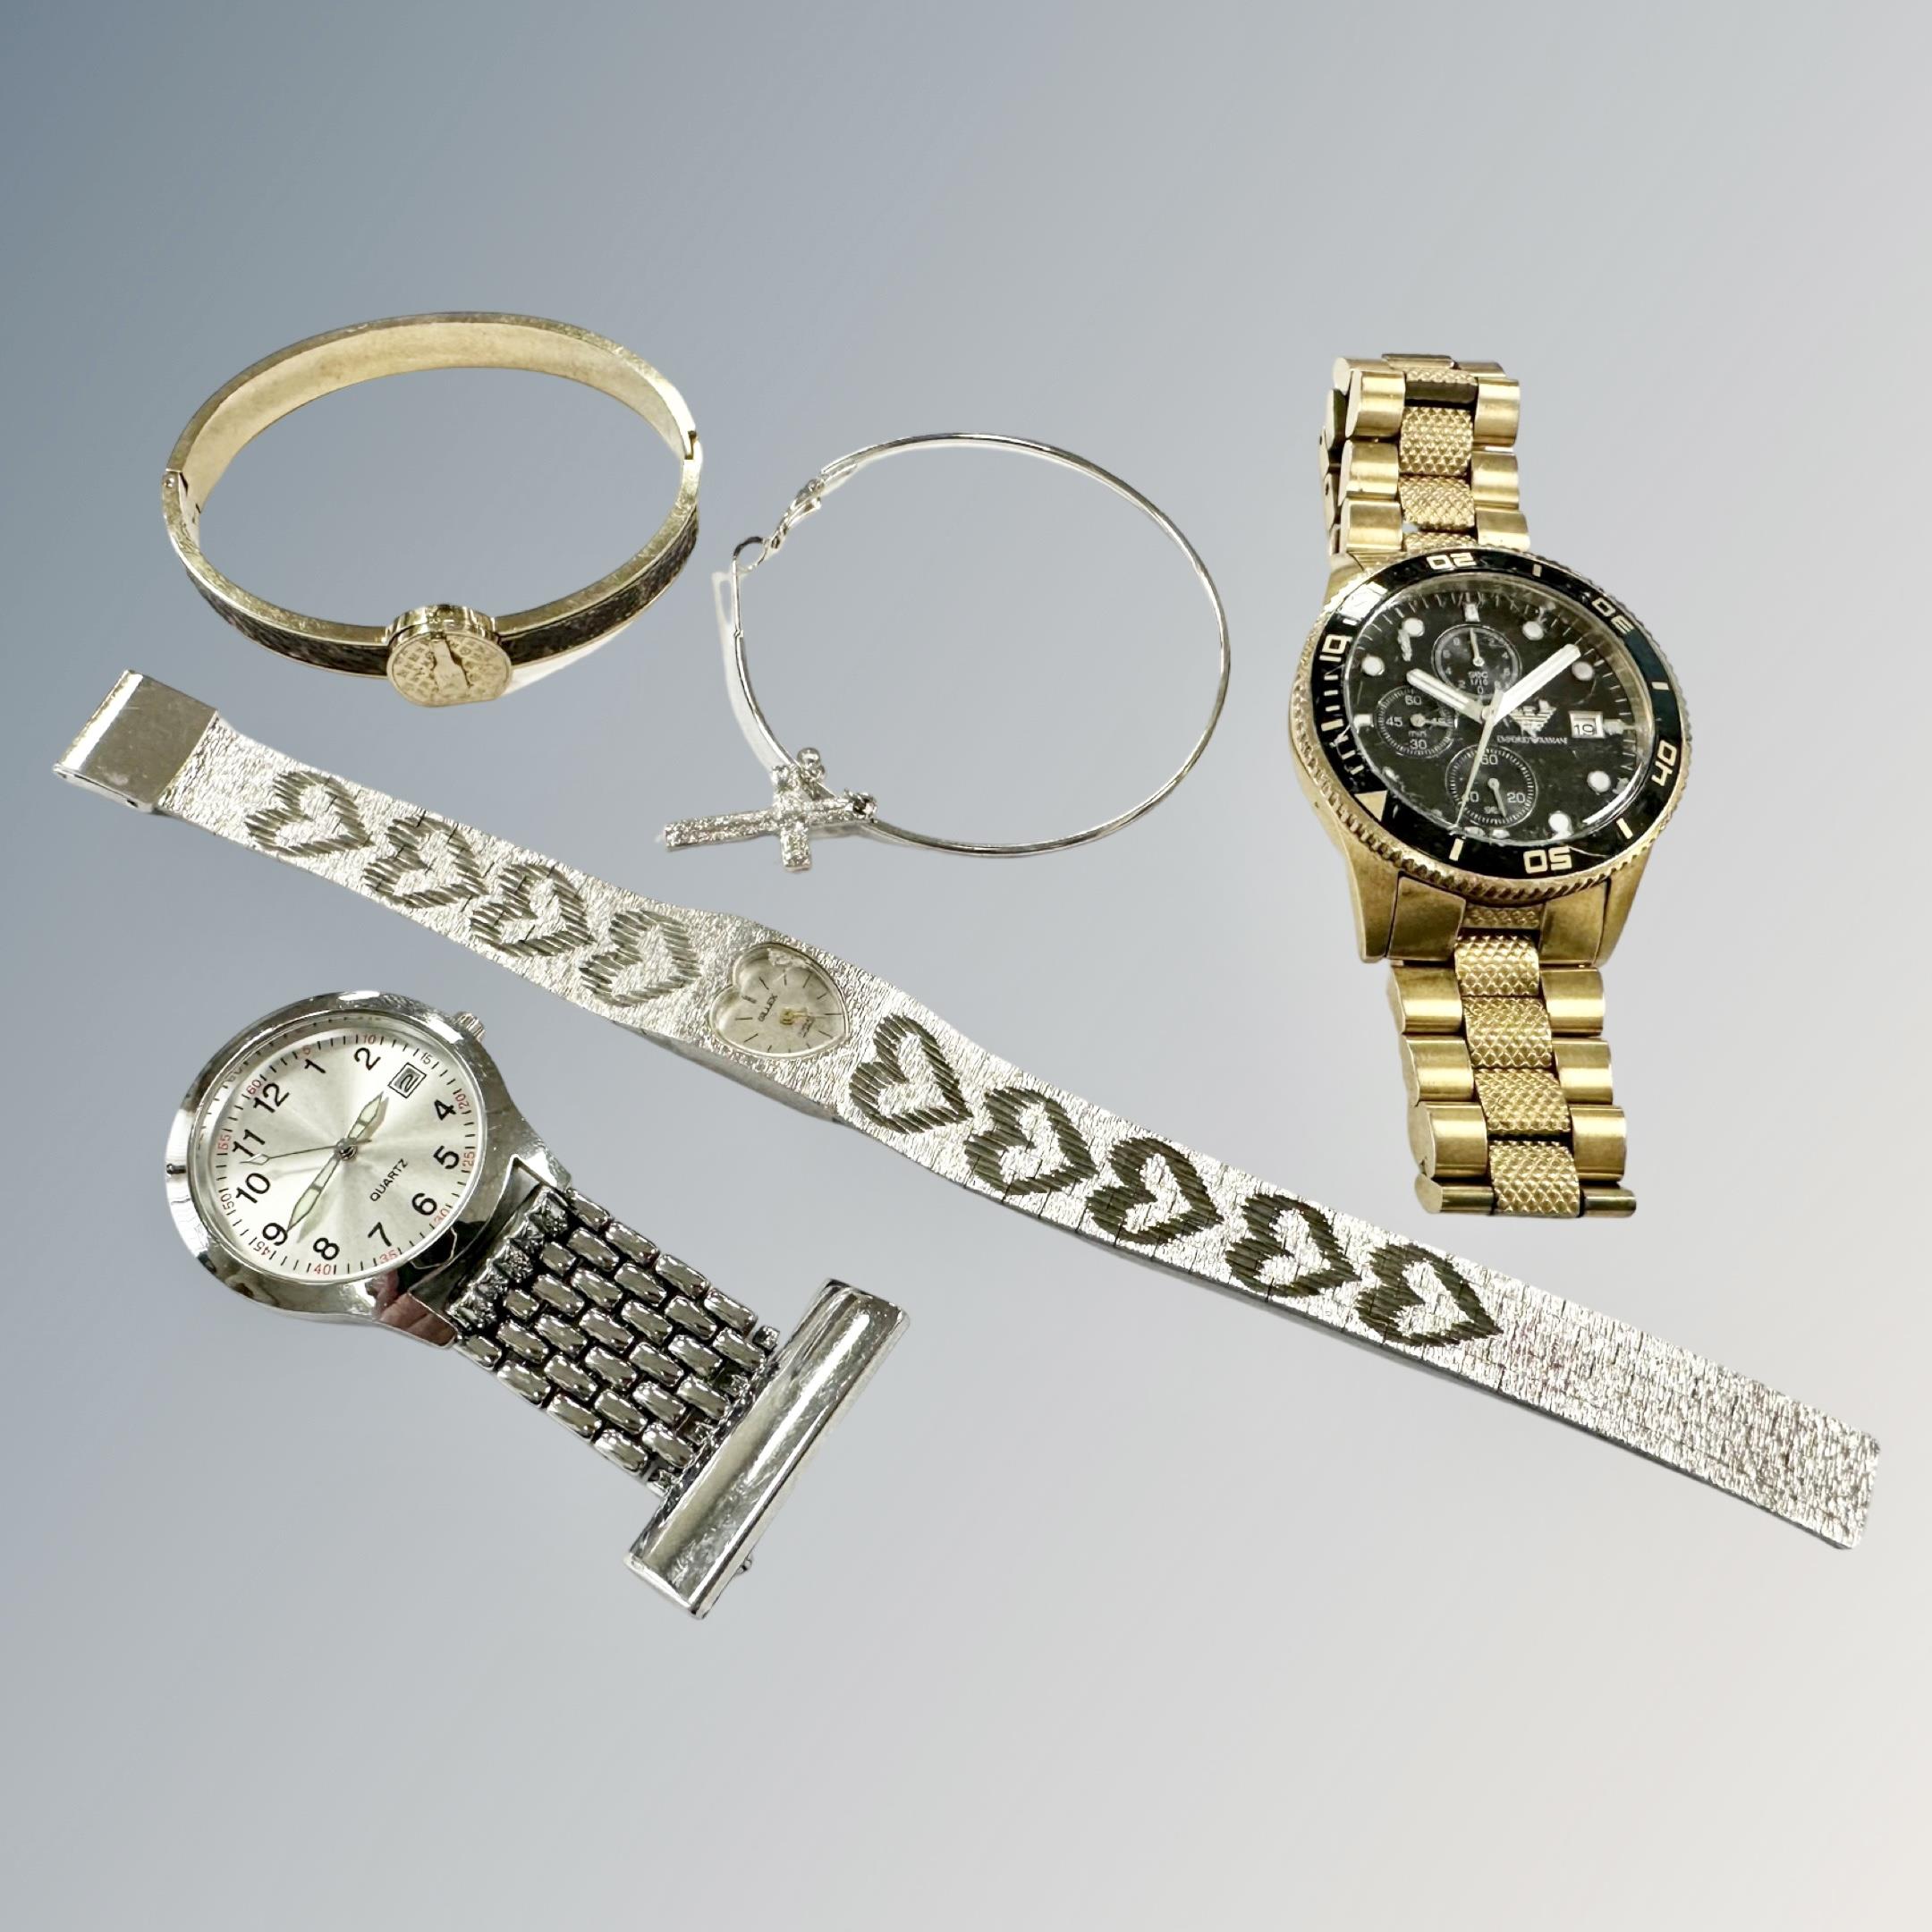 A Gentleman's Armani wristwatch, together with Lady's Gilex watch,